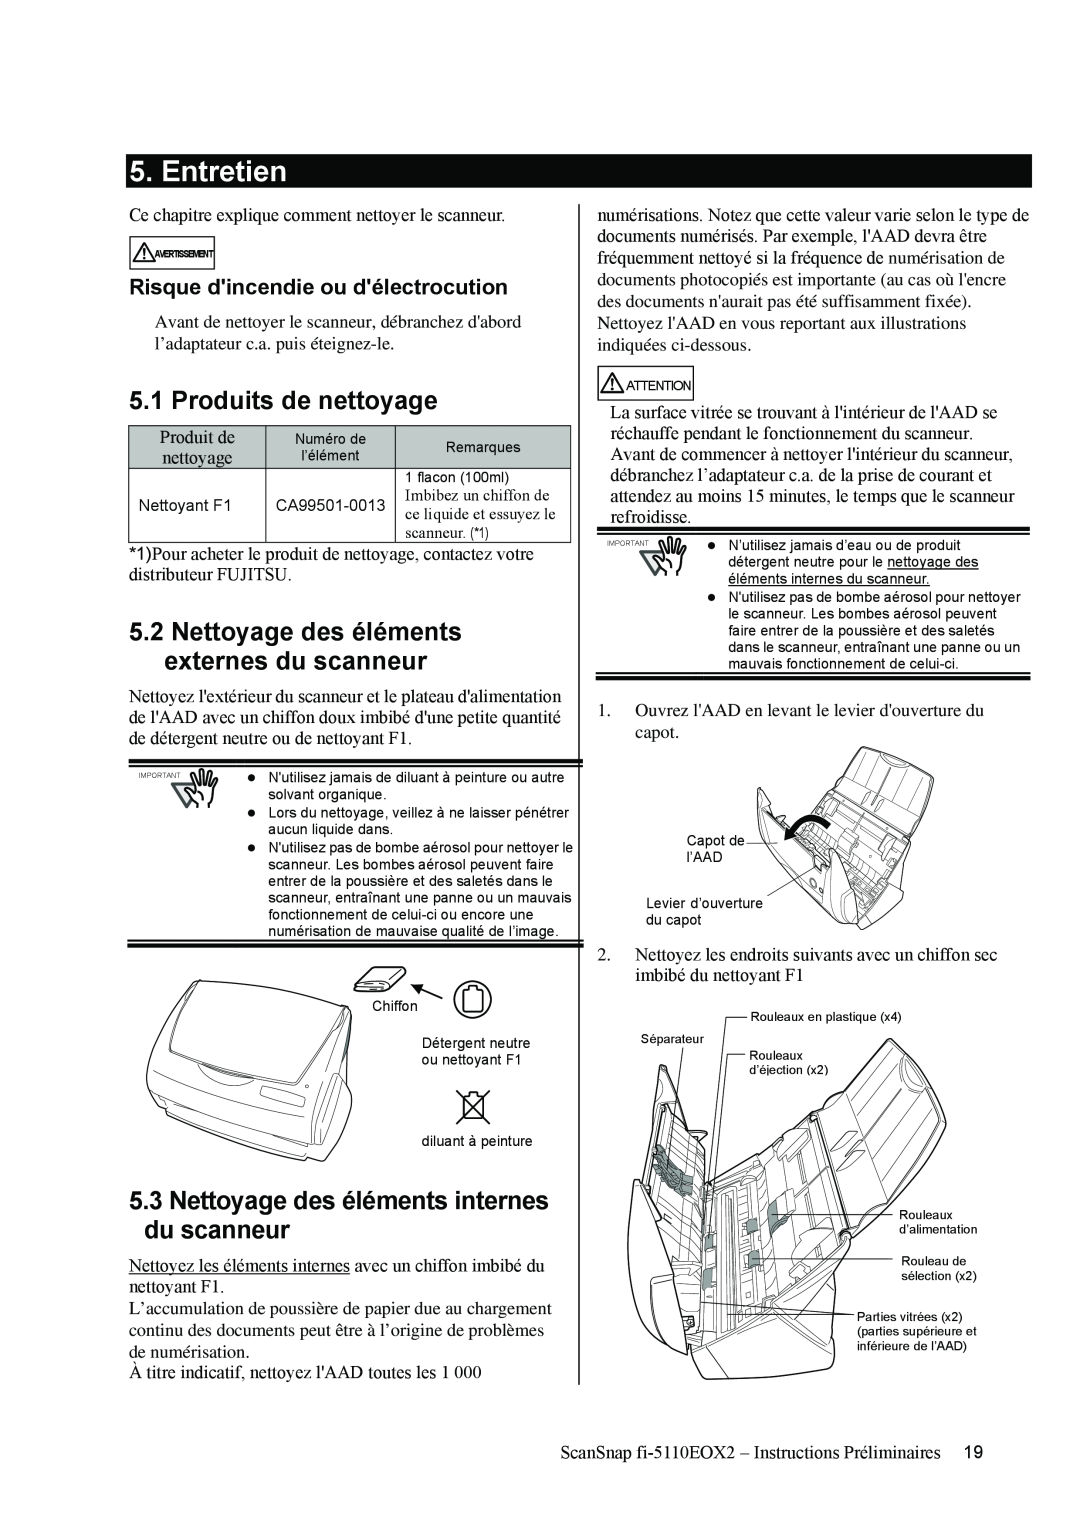 Fujitsu fi-5110EOX2 manual Entretien, Produits de nettoyage, Nettoyage des éléments internes du scanneur 